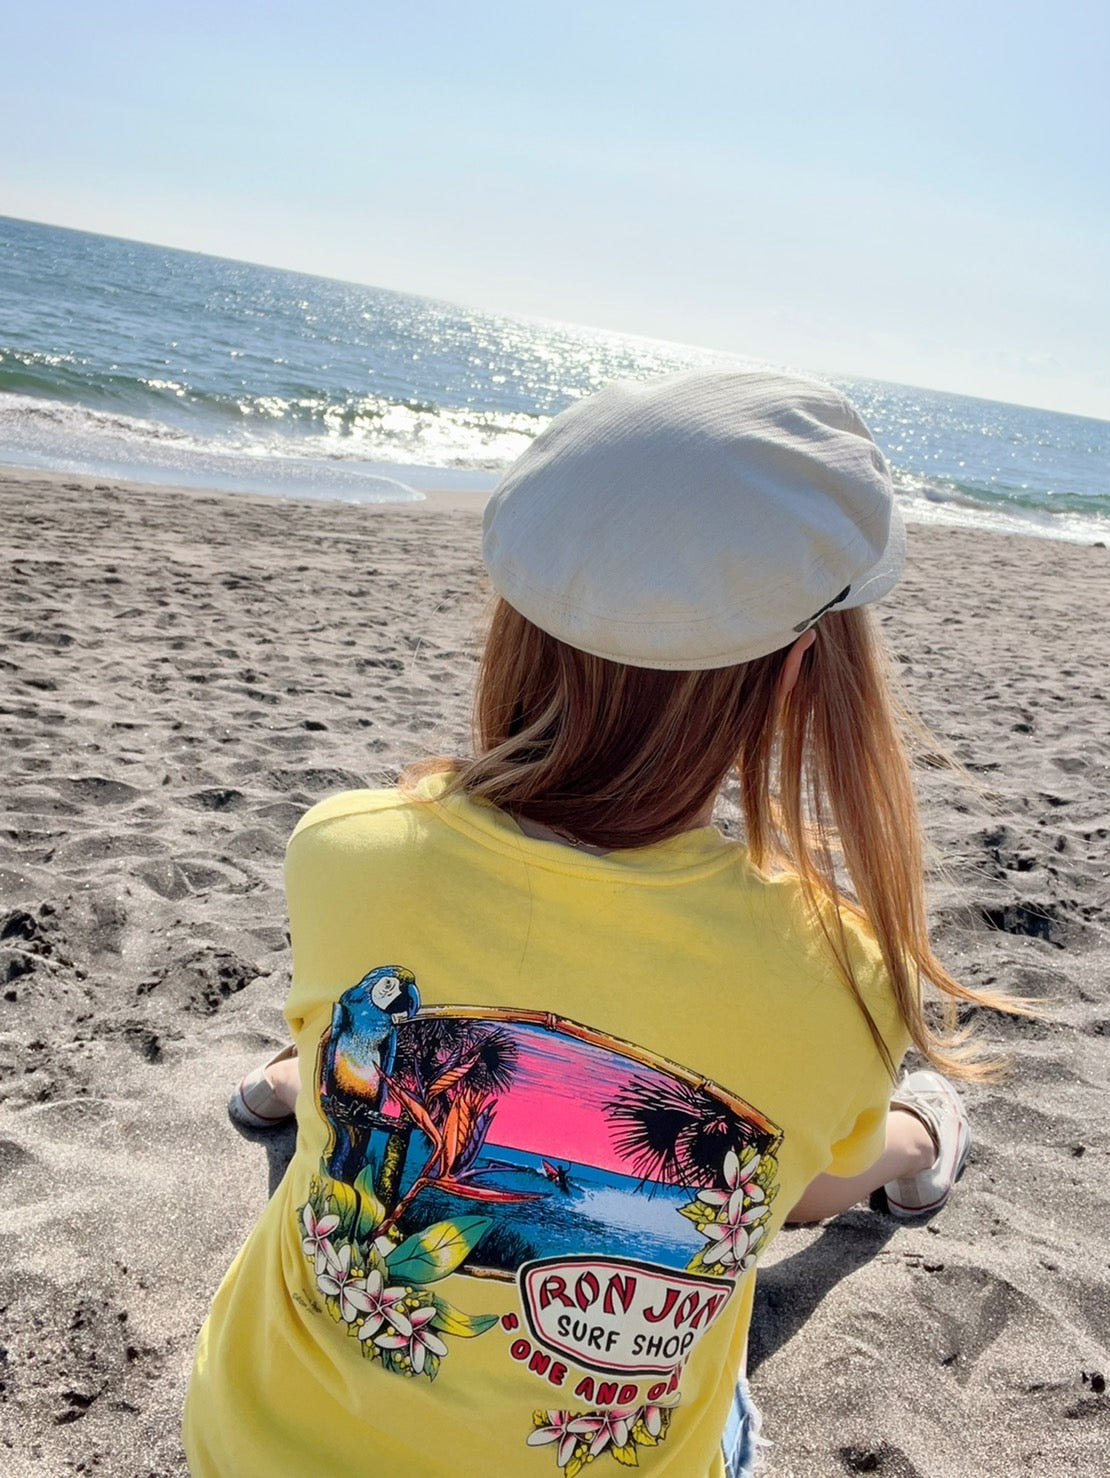 【RON JON】00's RonJon Surf Shop Vintage T-Shirt paradise surf Pocket  T-shirt （men's M)